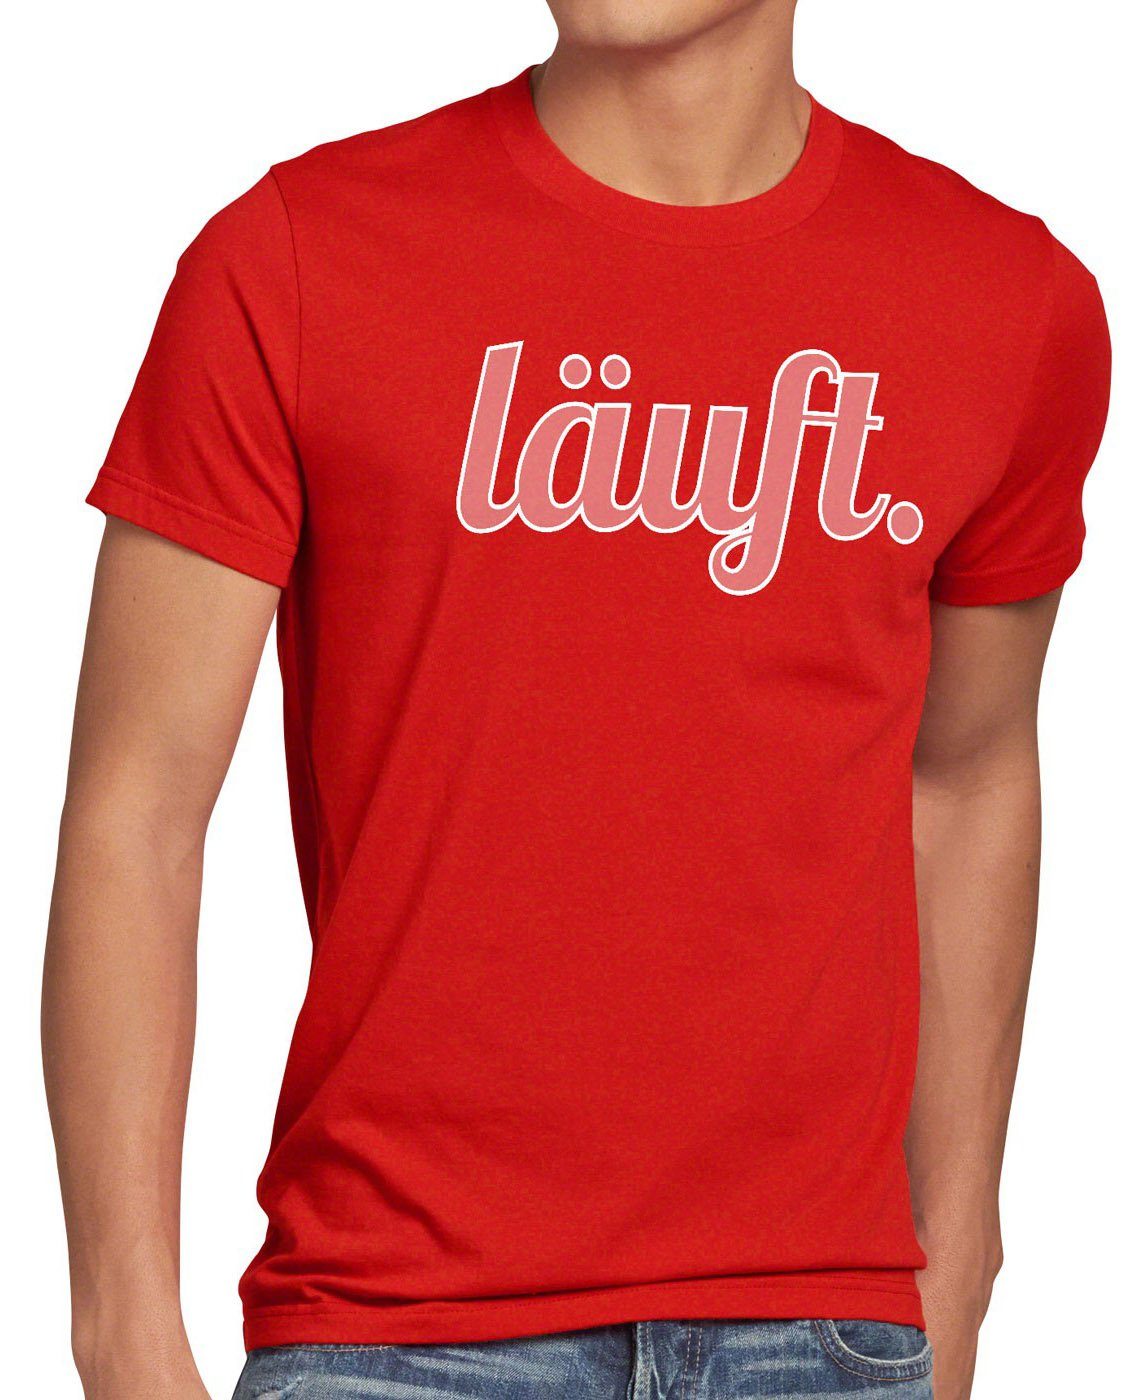 Spruchshirt Fun Funshirt meme mir rot Print-Shirt Herren style3 dir Shirt top T-Shirt läuft bei kult